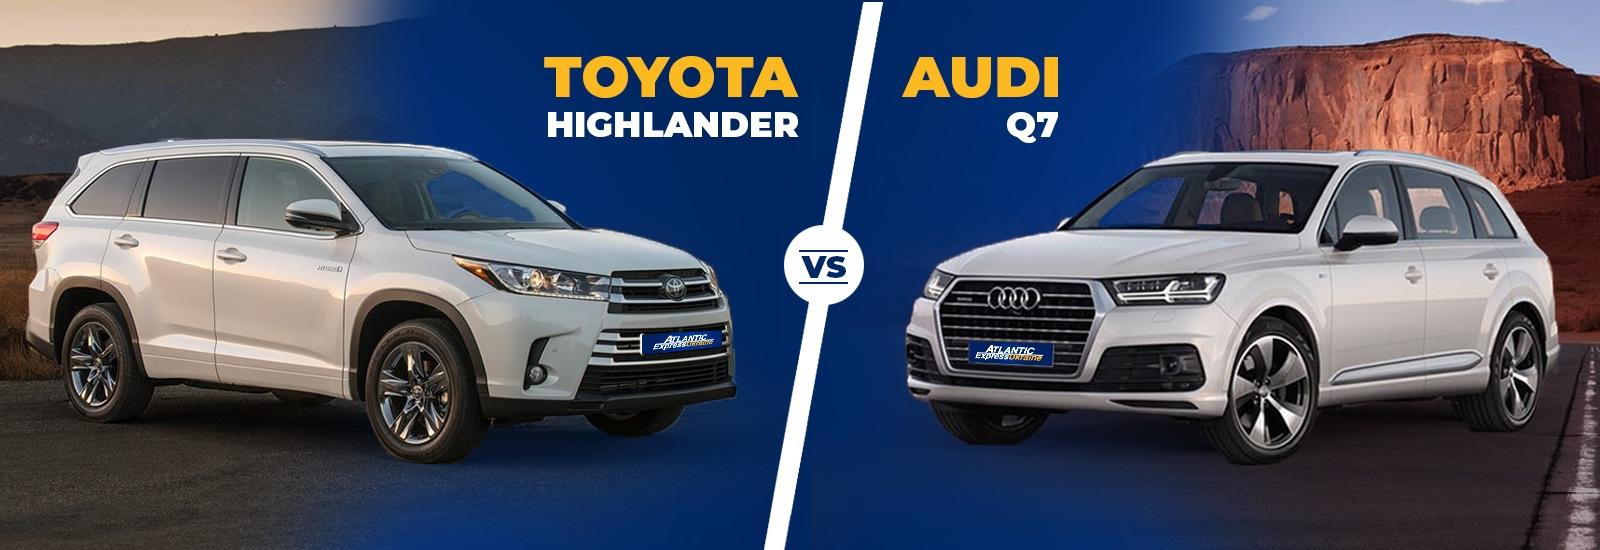 Битва гигантов: Toyota Highlander или Audi Q7? Прогнозы на 2019-2020 гг.